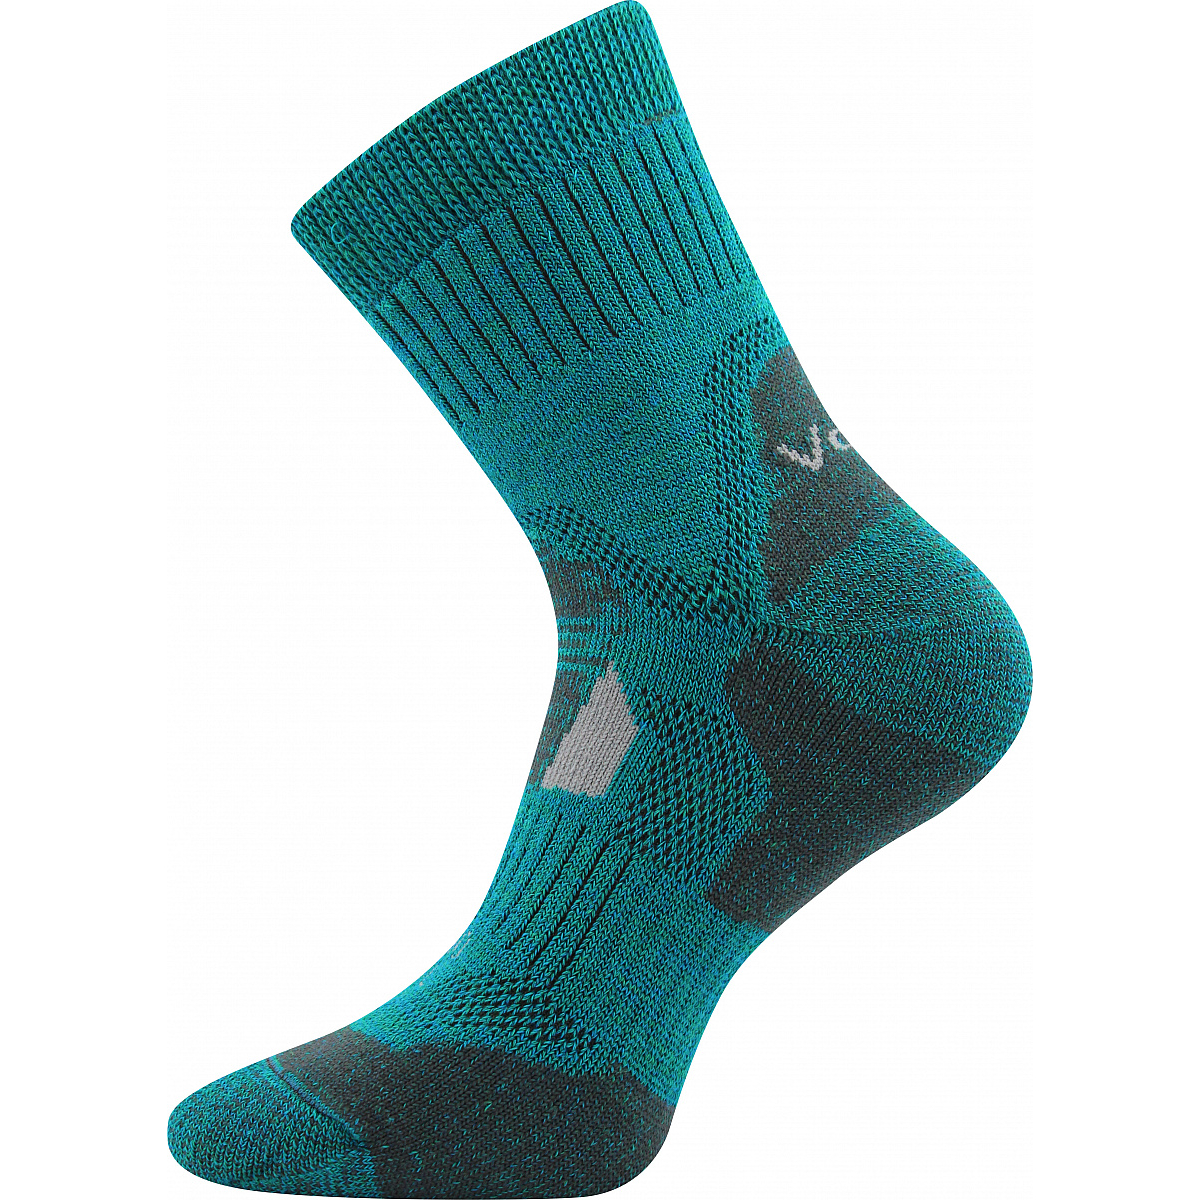 Extra teplé vlněné ponožky Voxx Stabil - modré-zelené, 35-38